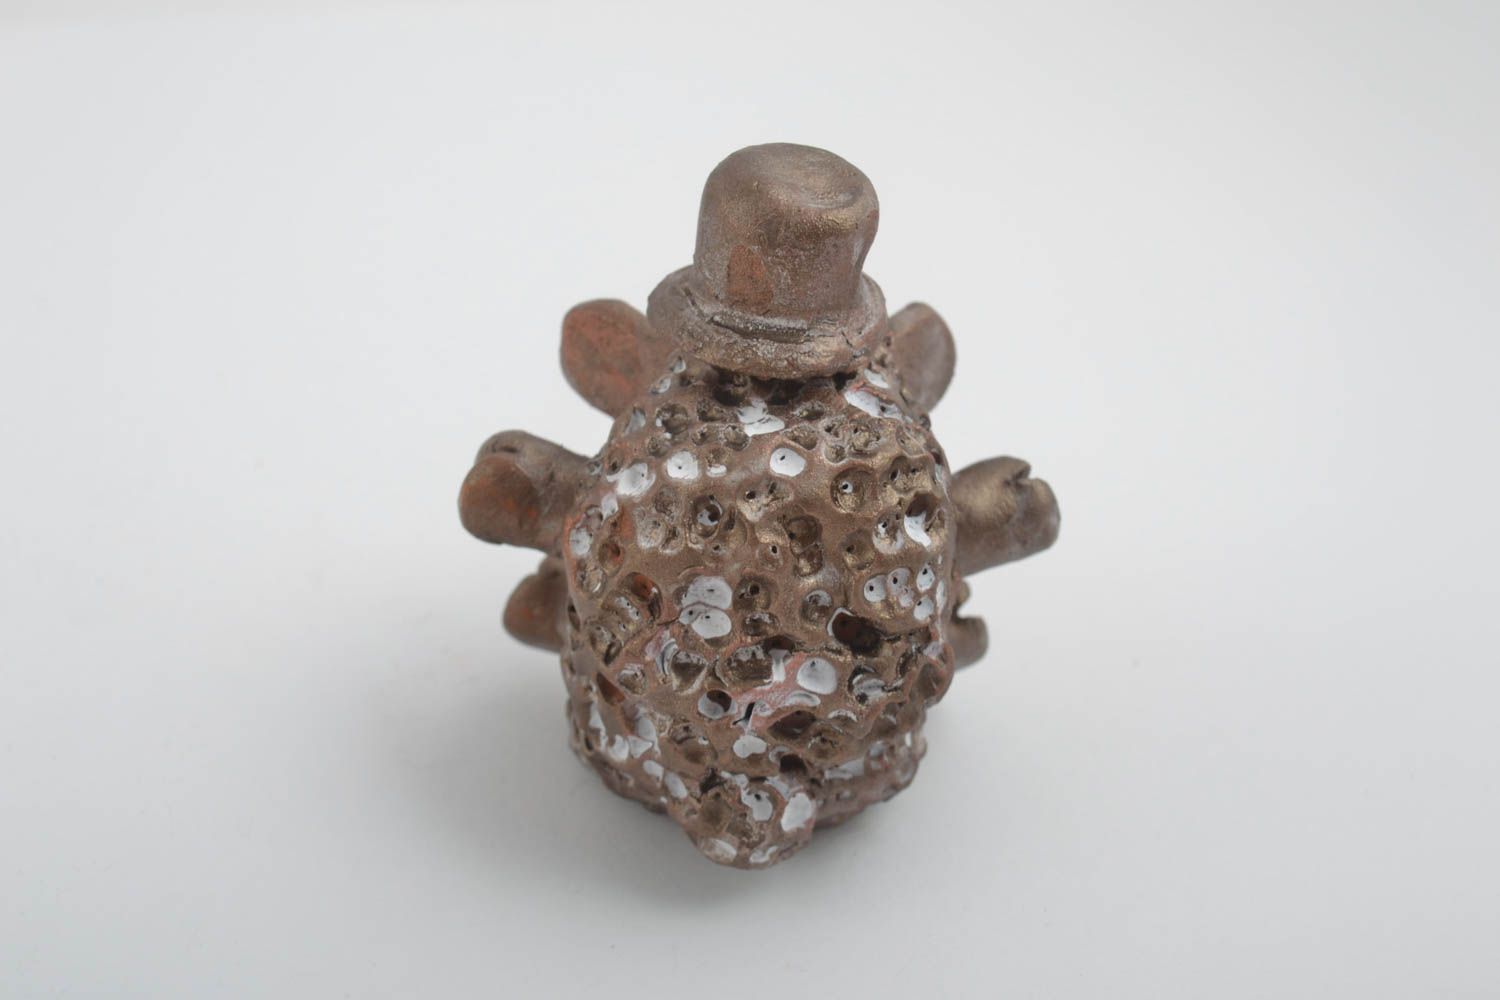 Figurina fatta a mano in ceramica animaletto divertente souvenir di terracotta foto 9